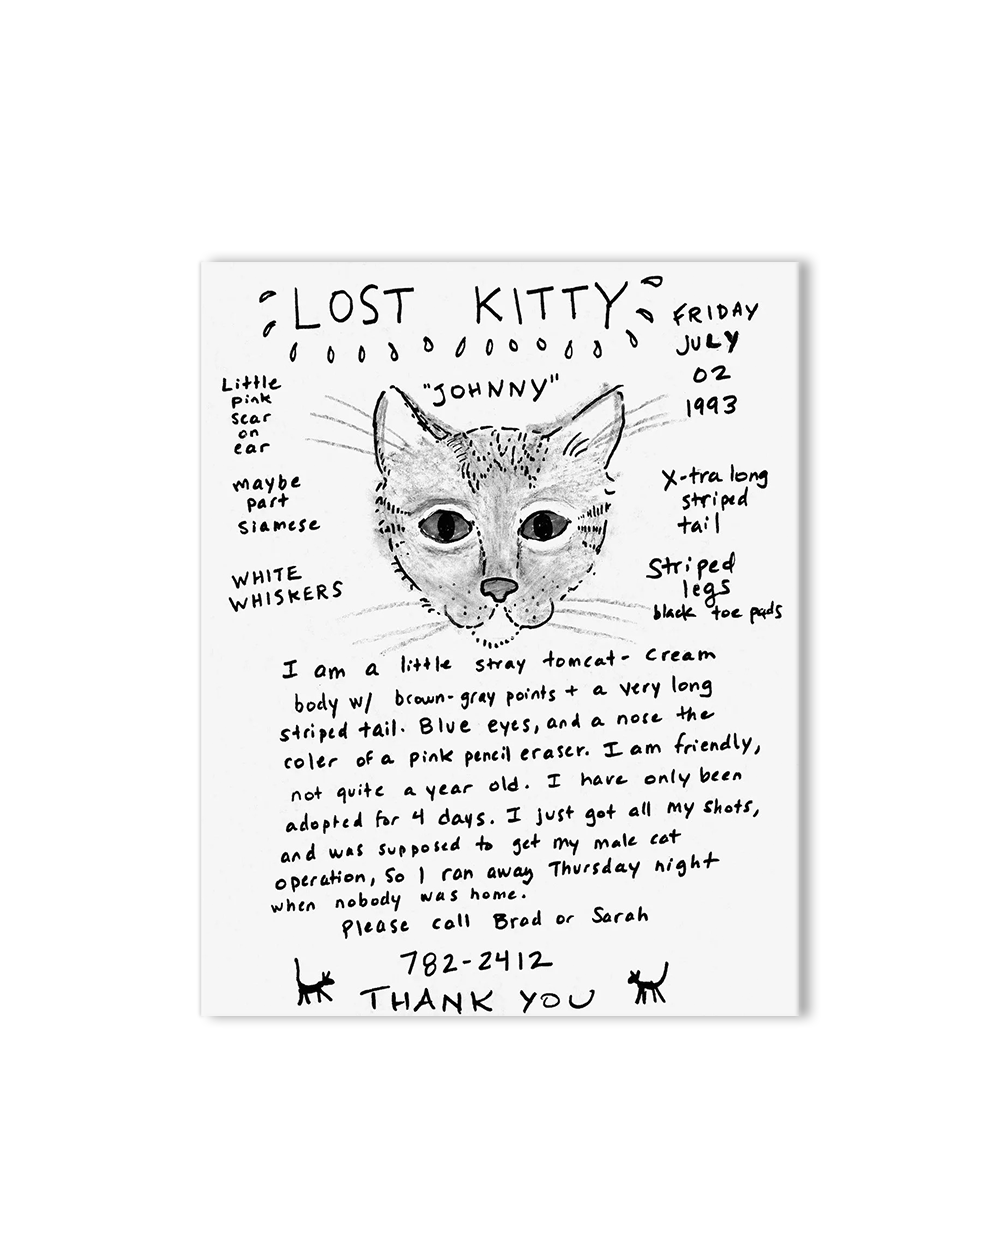 Still Missing - The Folk Art of Pet Posters